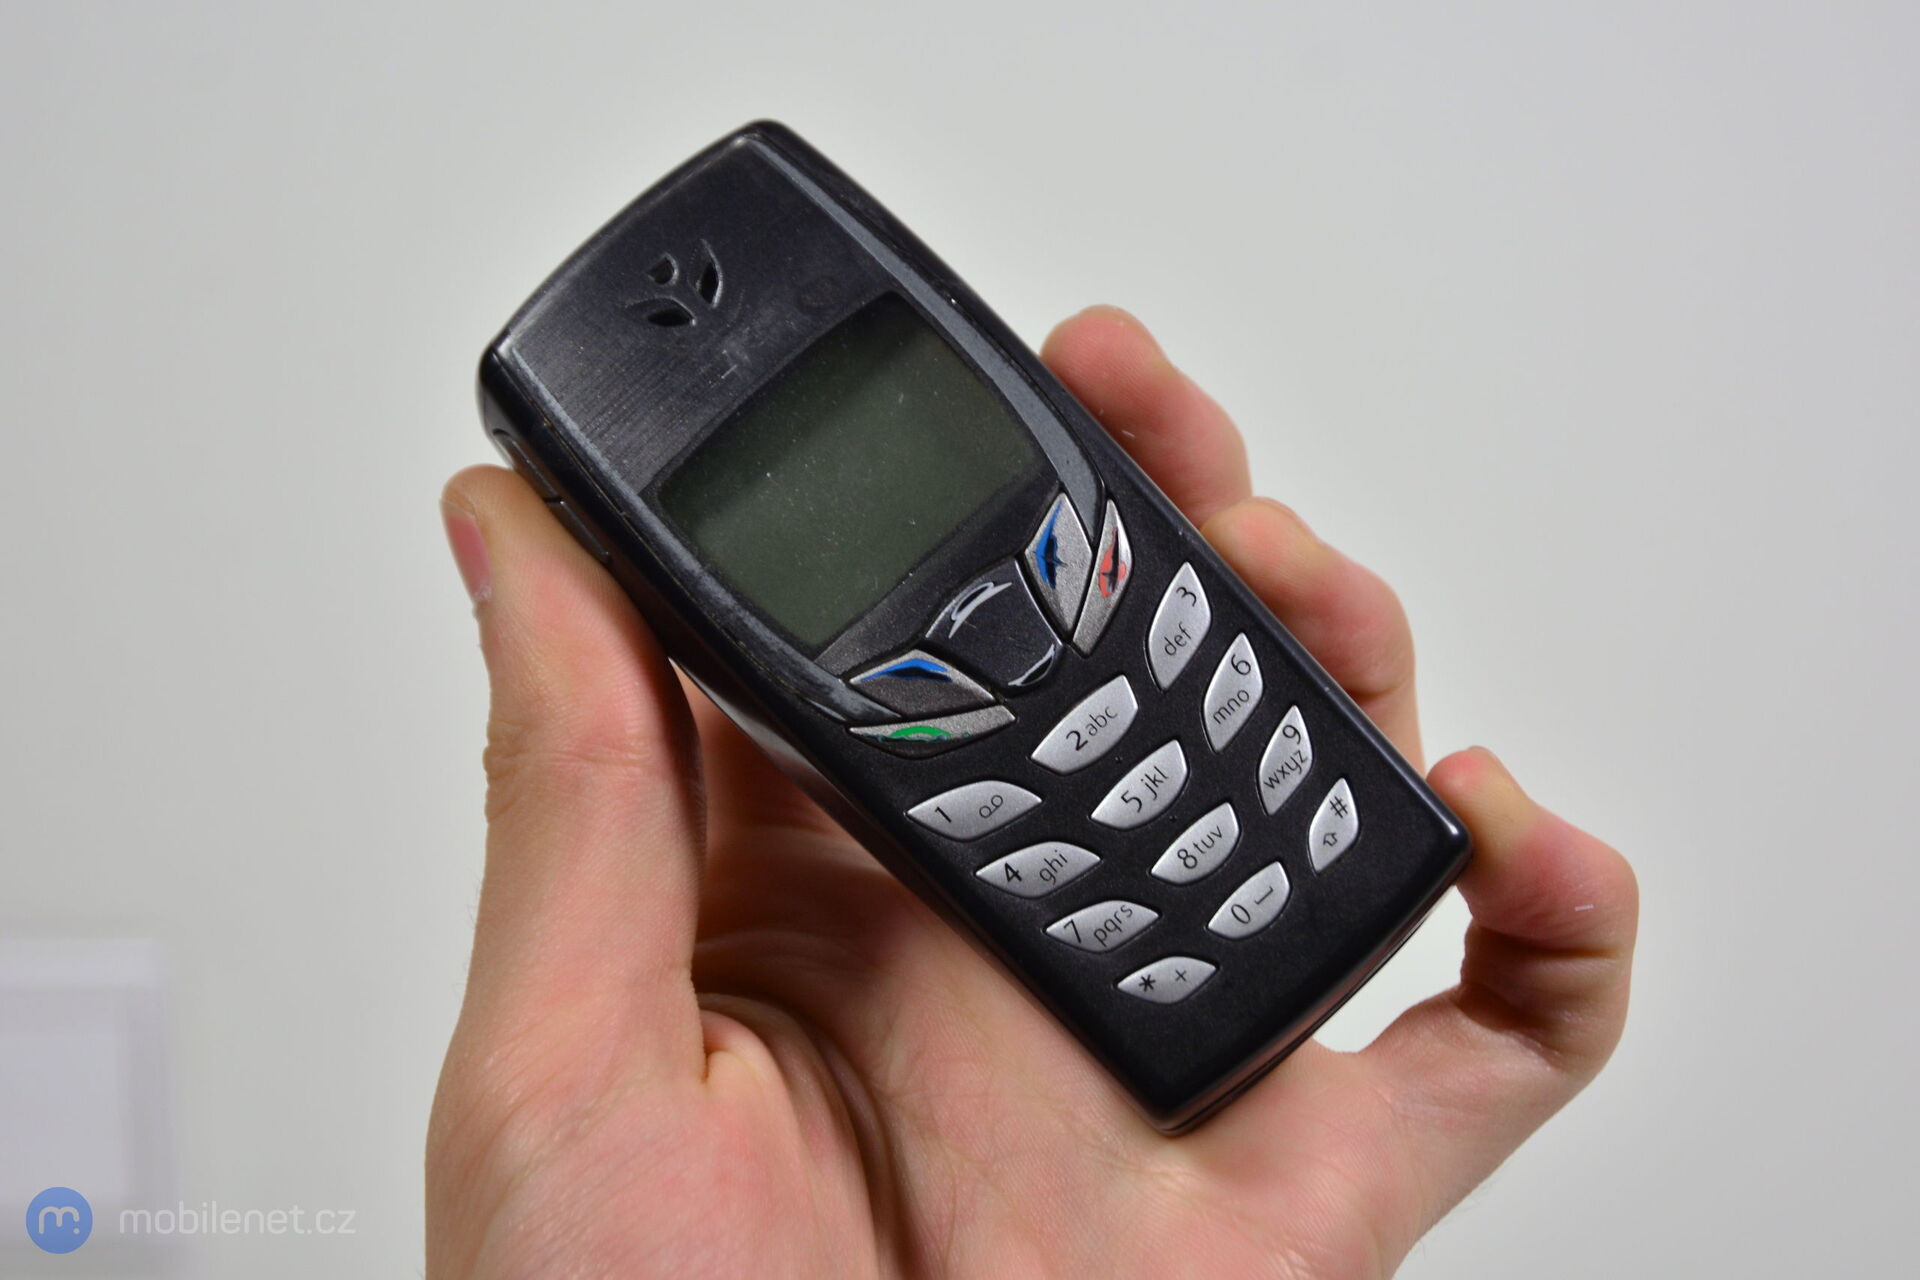 Nokia 6510